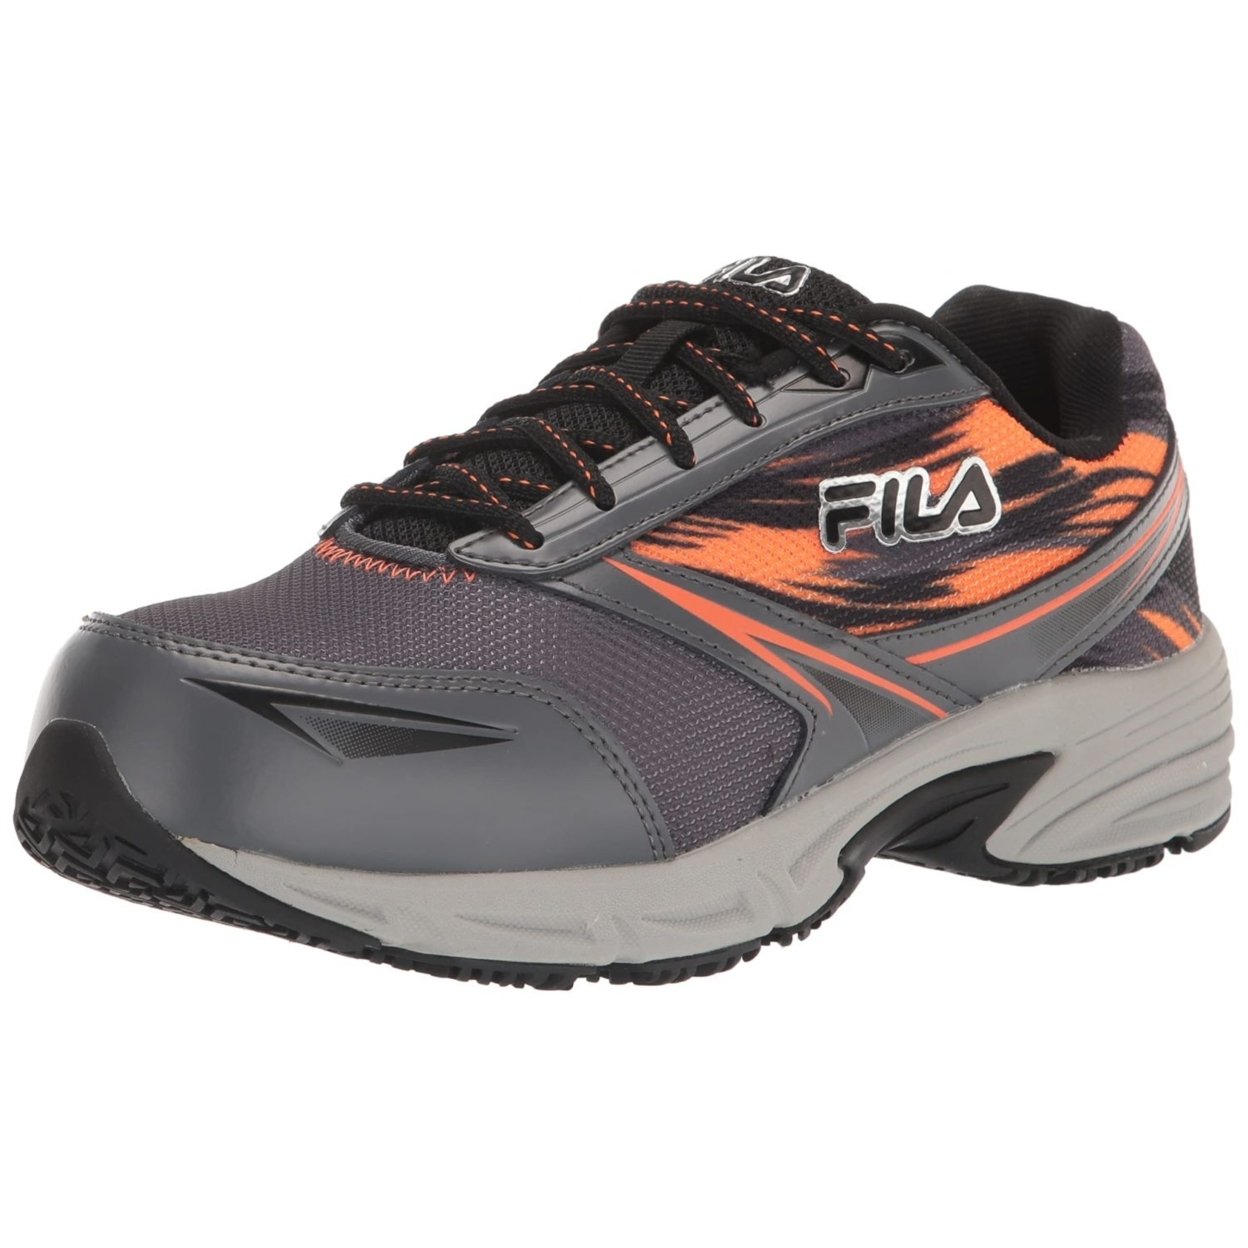 Fila Menâs Memory Meiera 2 Slip Resistant And Composite Toe Work Shoe CSRK/BLK/VORN - Castlerock/Black/Vibrant Orange, 7.5